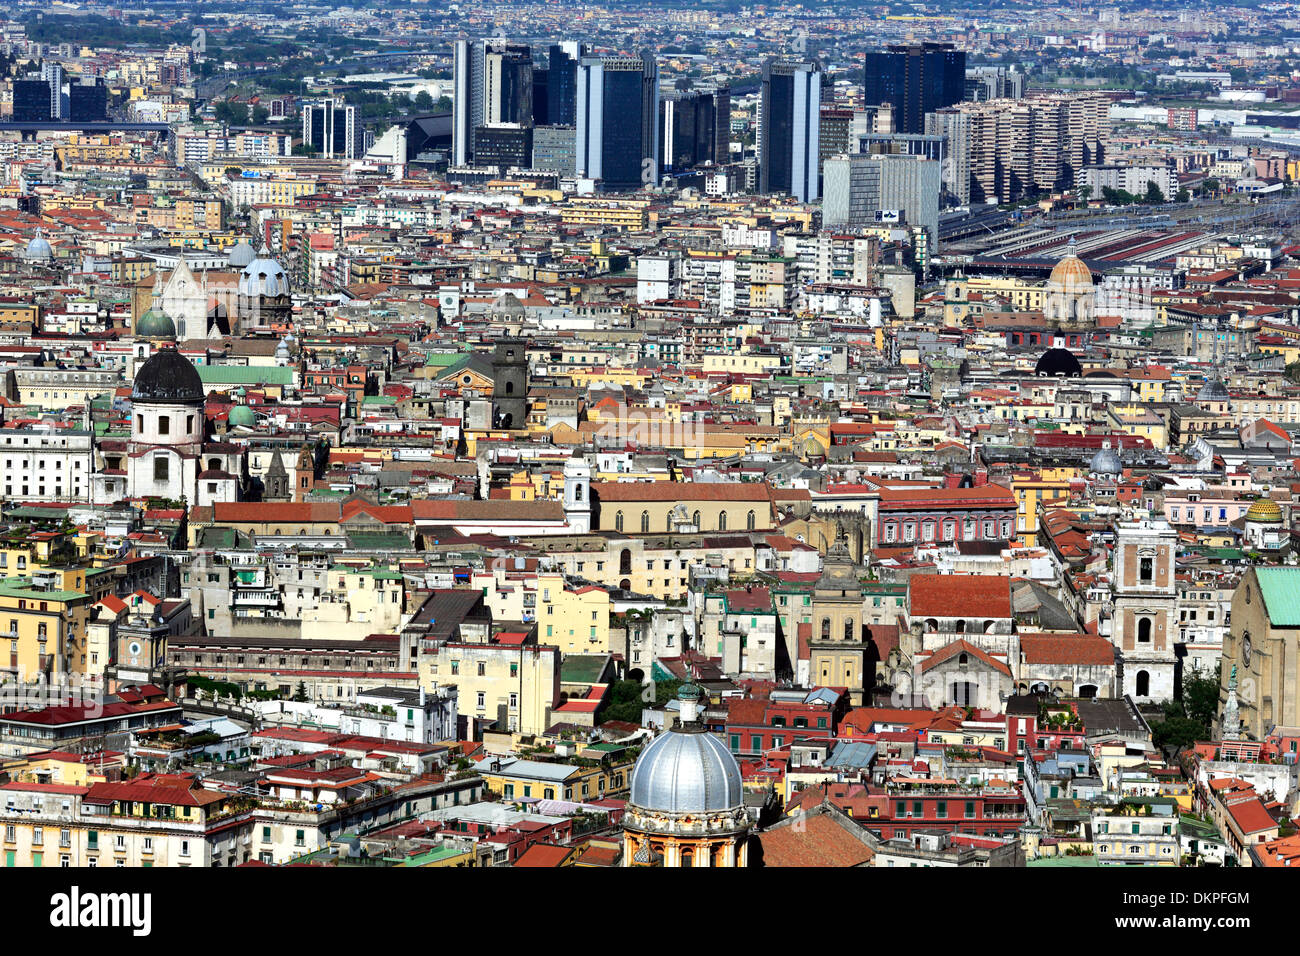 Cityscape from Vomero hill, Naples, Campania, Italy Stock Photo